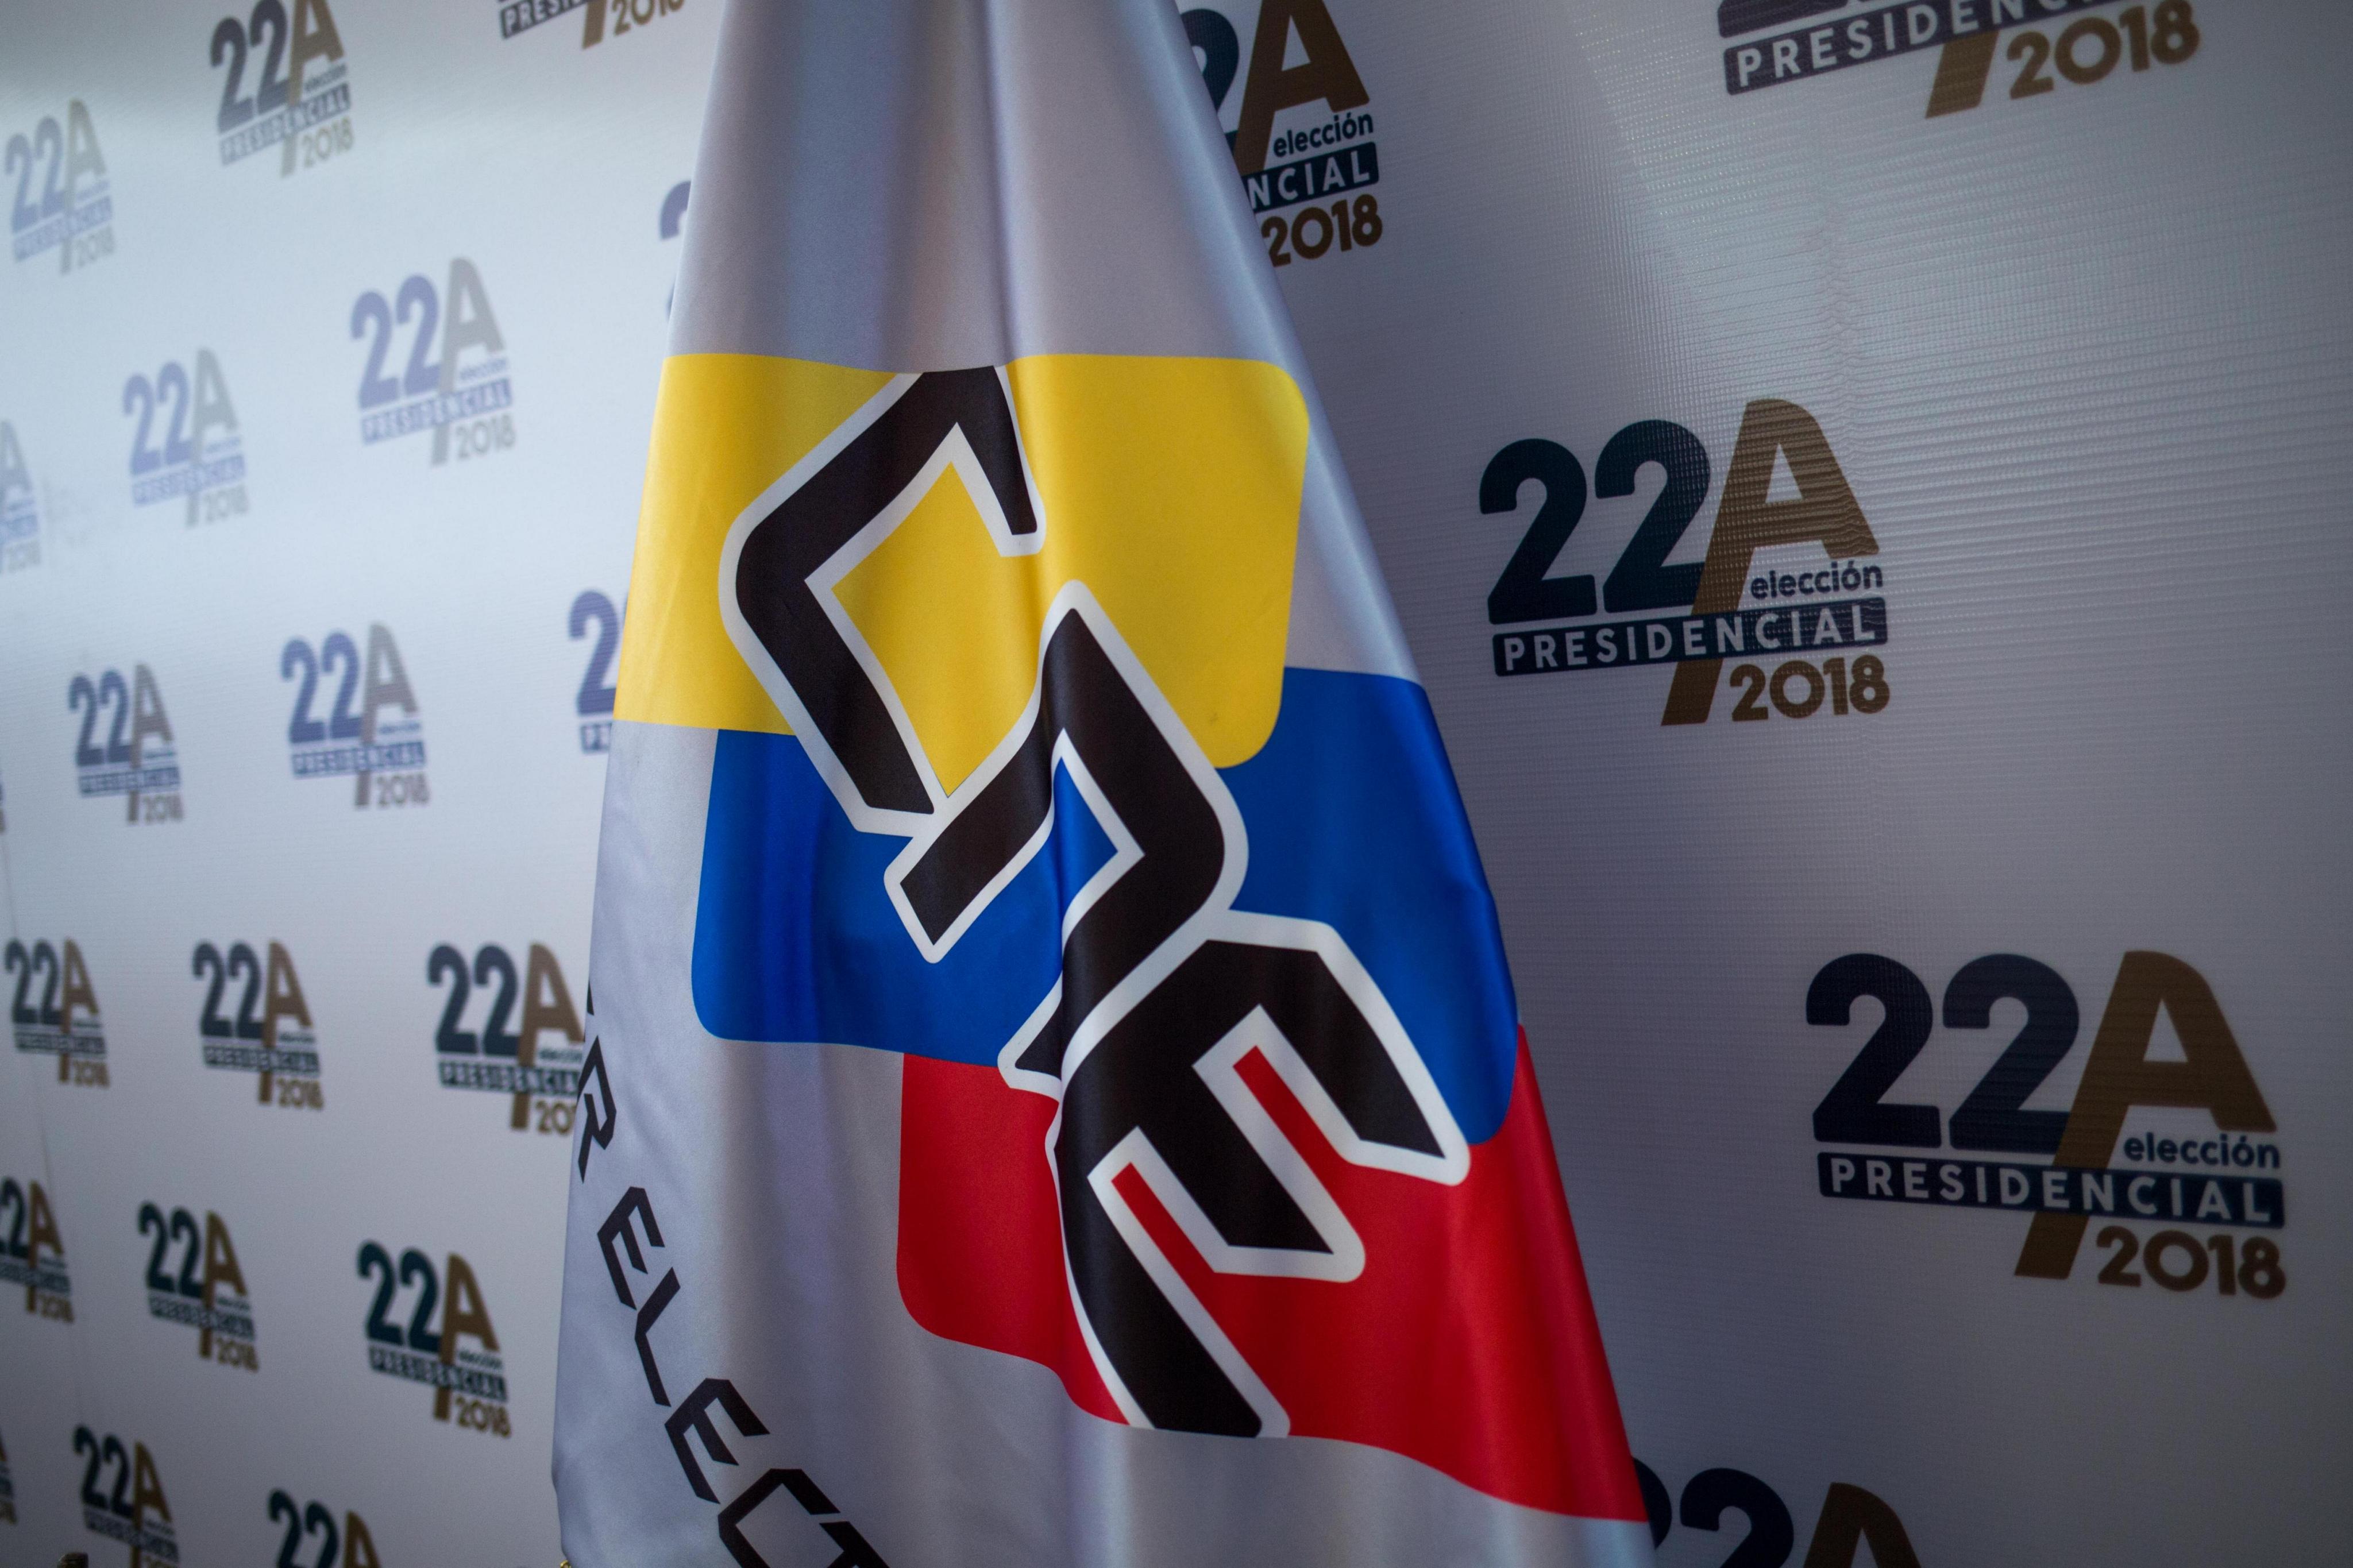 Posponen elección presidencial en Venezuela para el 20 de mayo